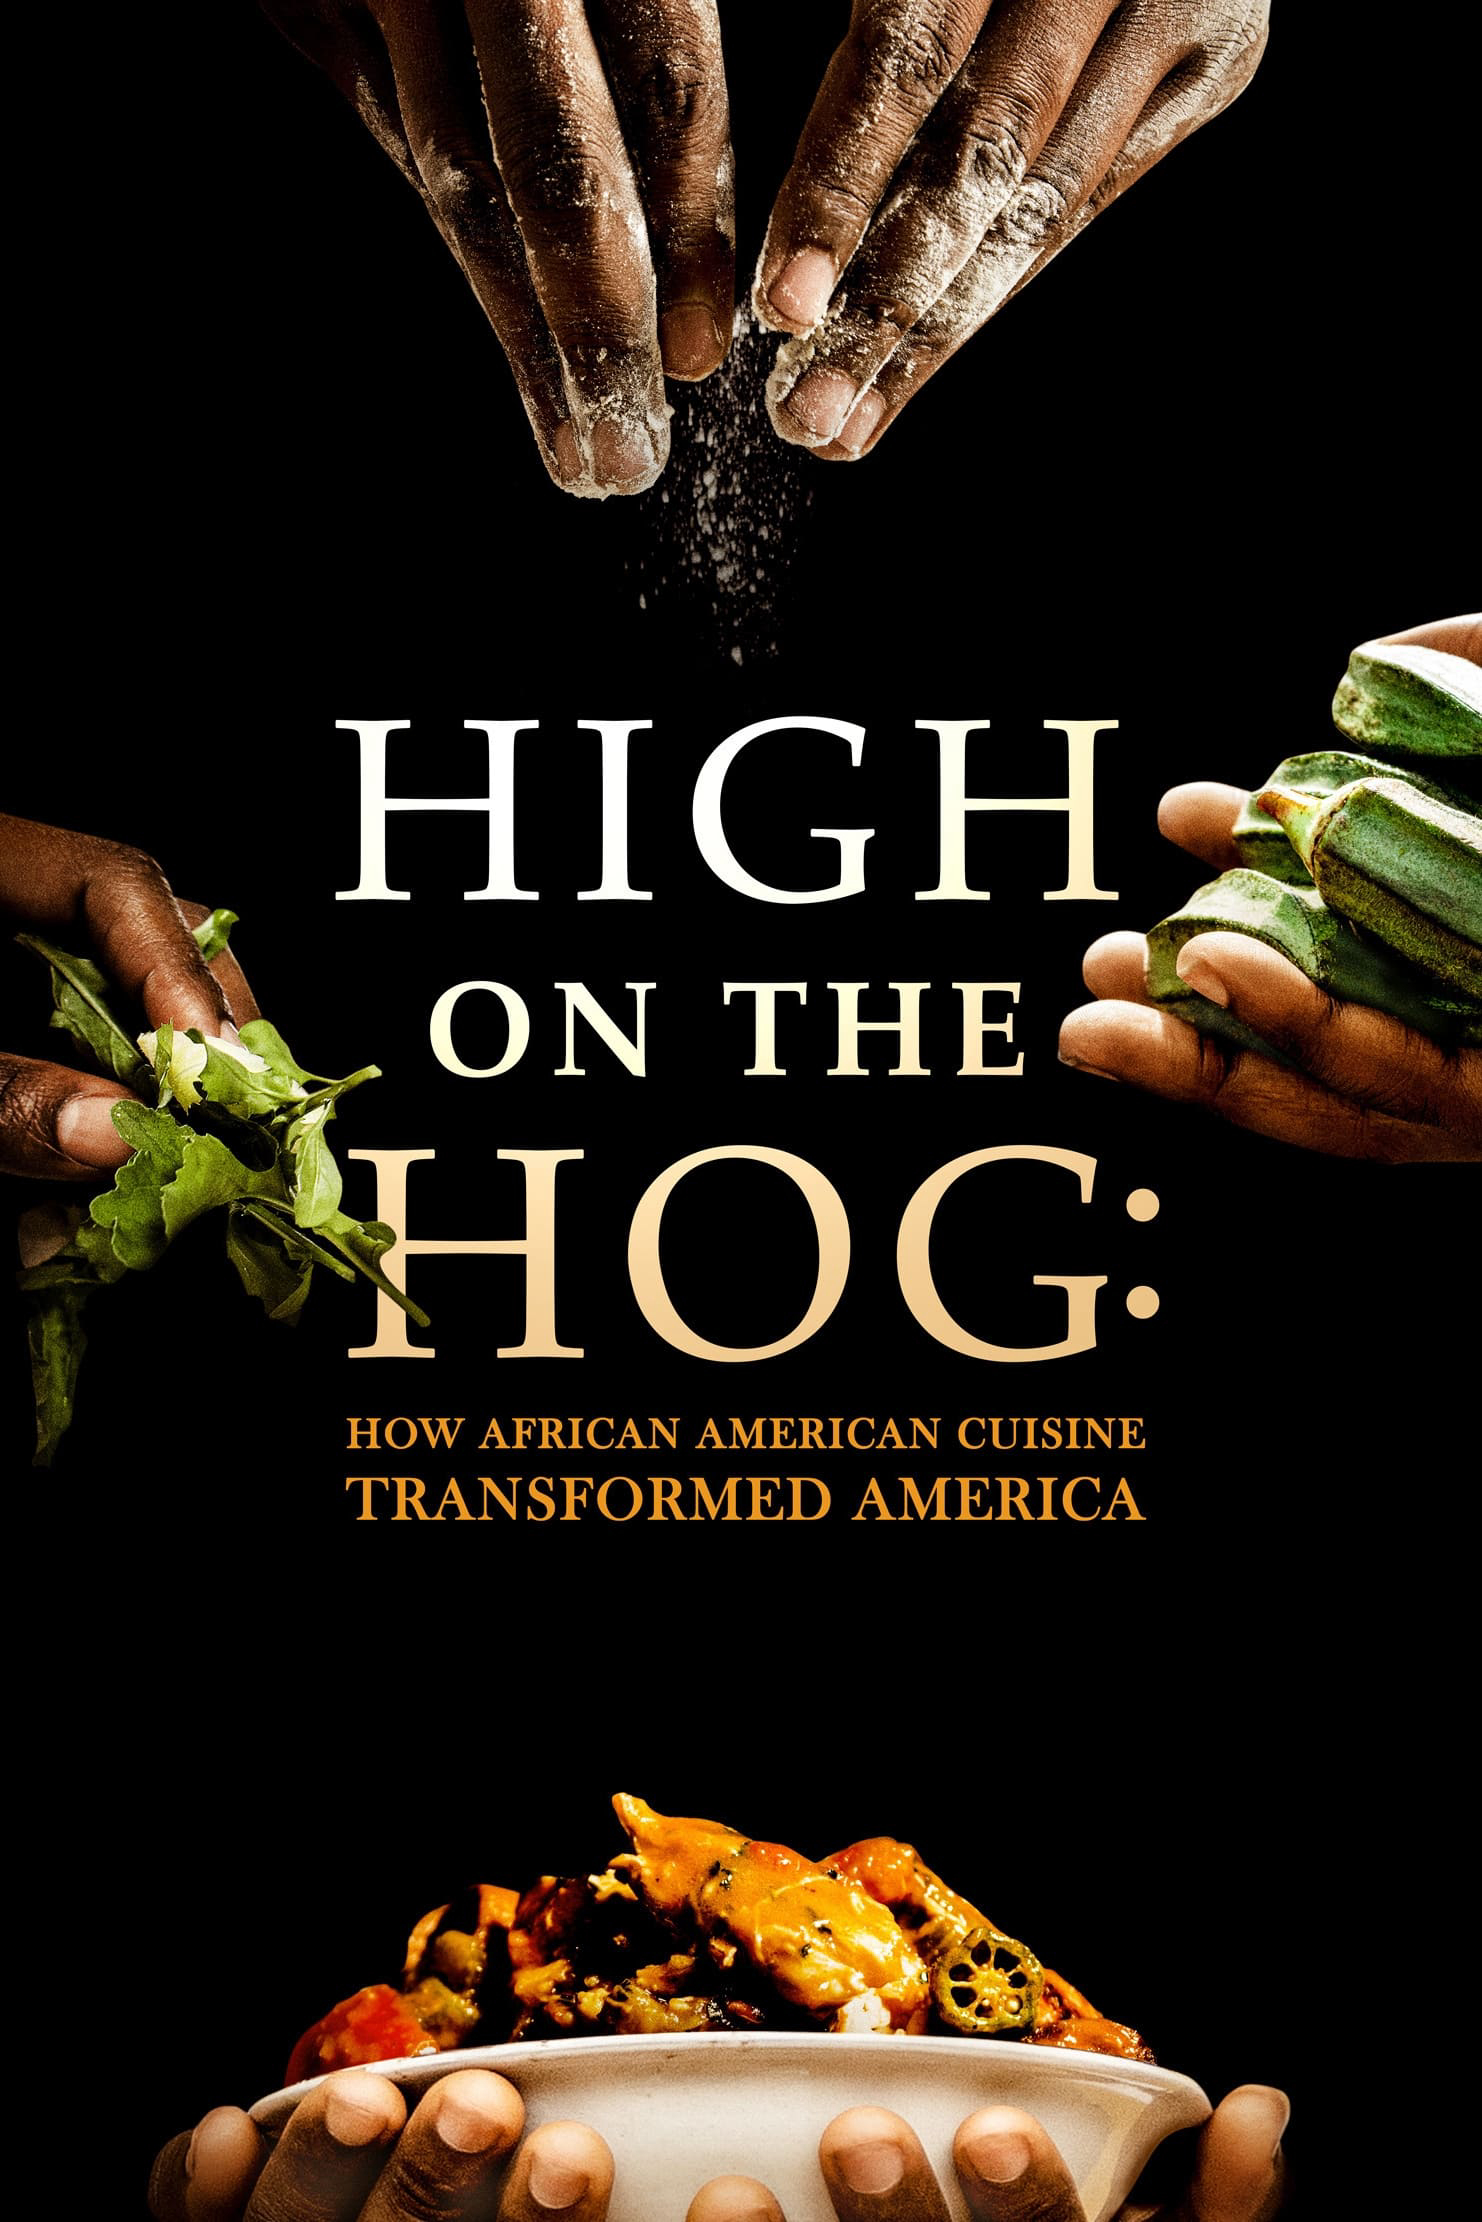 High on the Hog: Ẩm thực Mỹ gốc Phi đã thay đổi Hoa Kỳ như thế nào (S2) (High on the Hog: How African American Cuisine Transformed America) [2021]